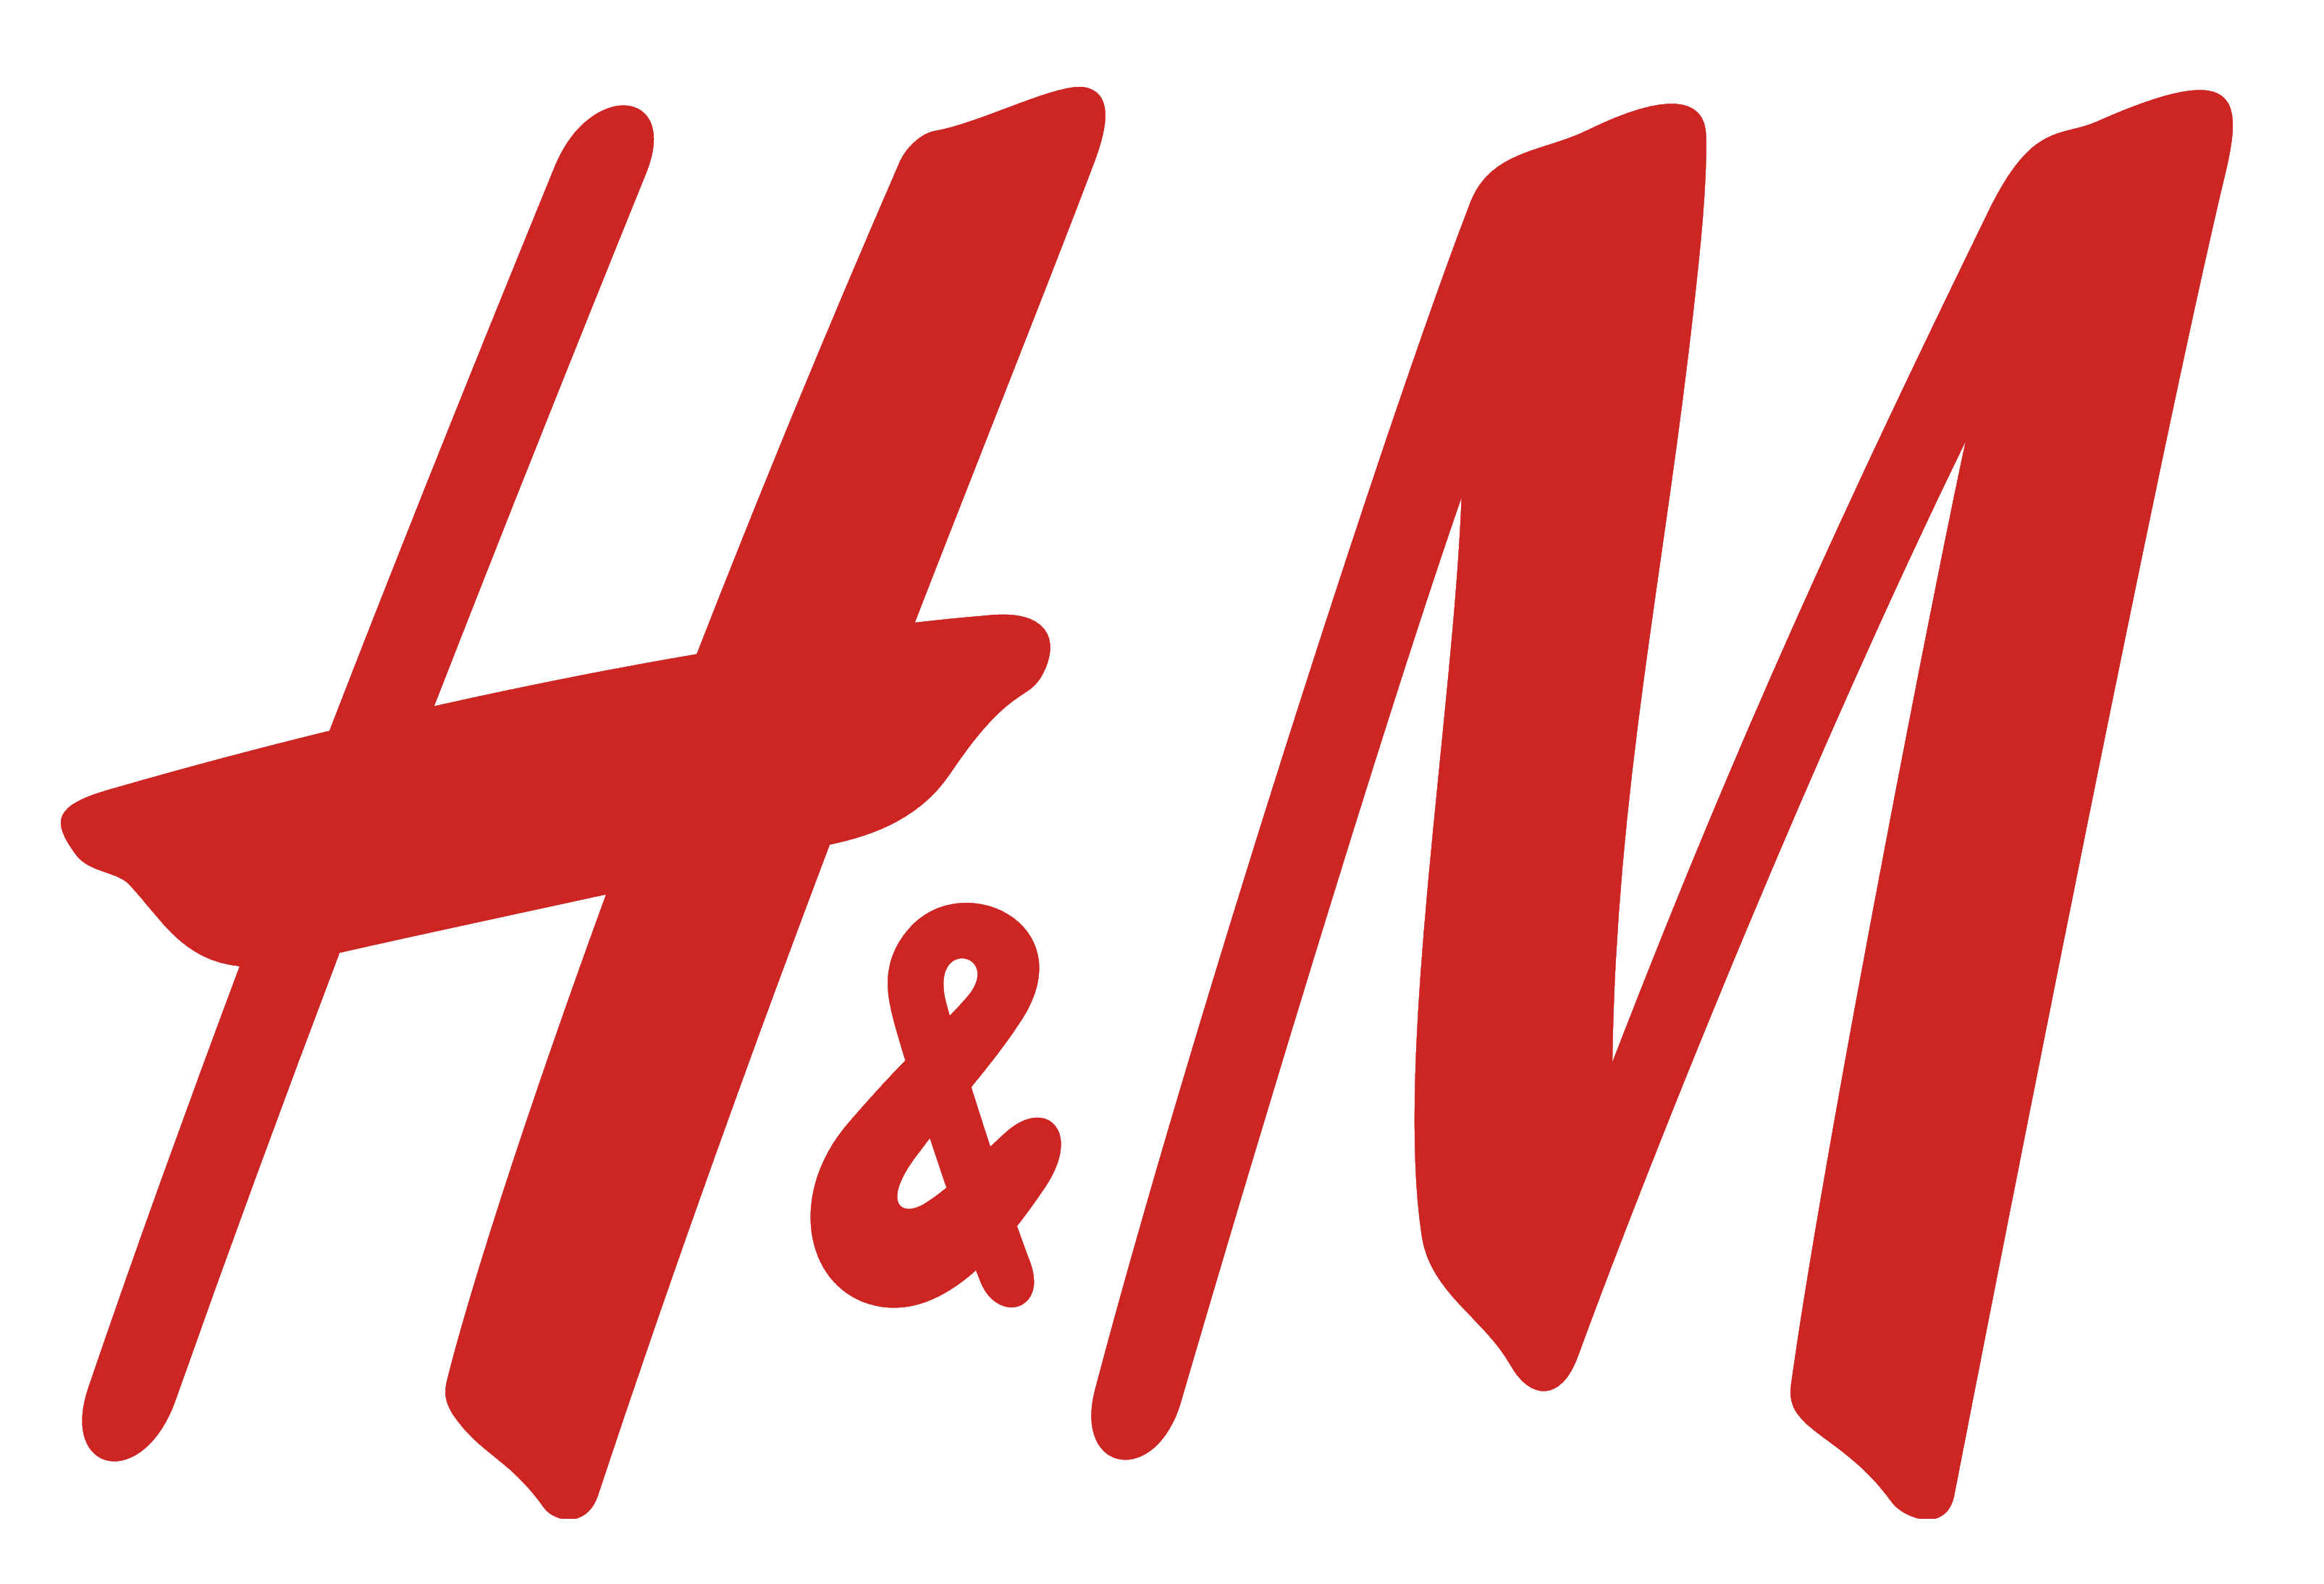 H&M logo, logotype